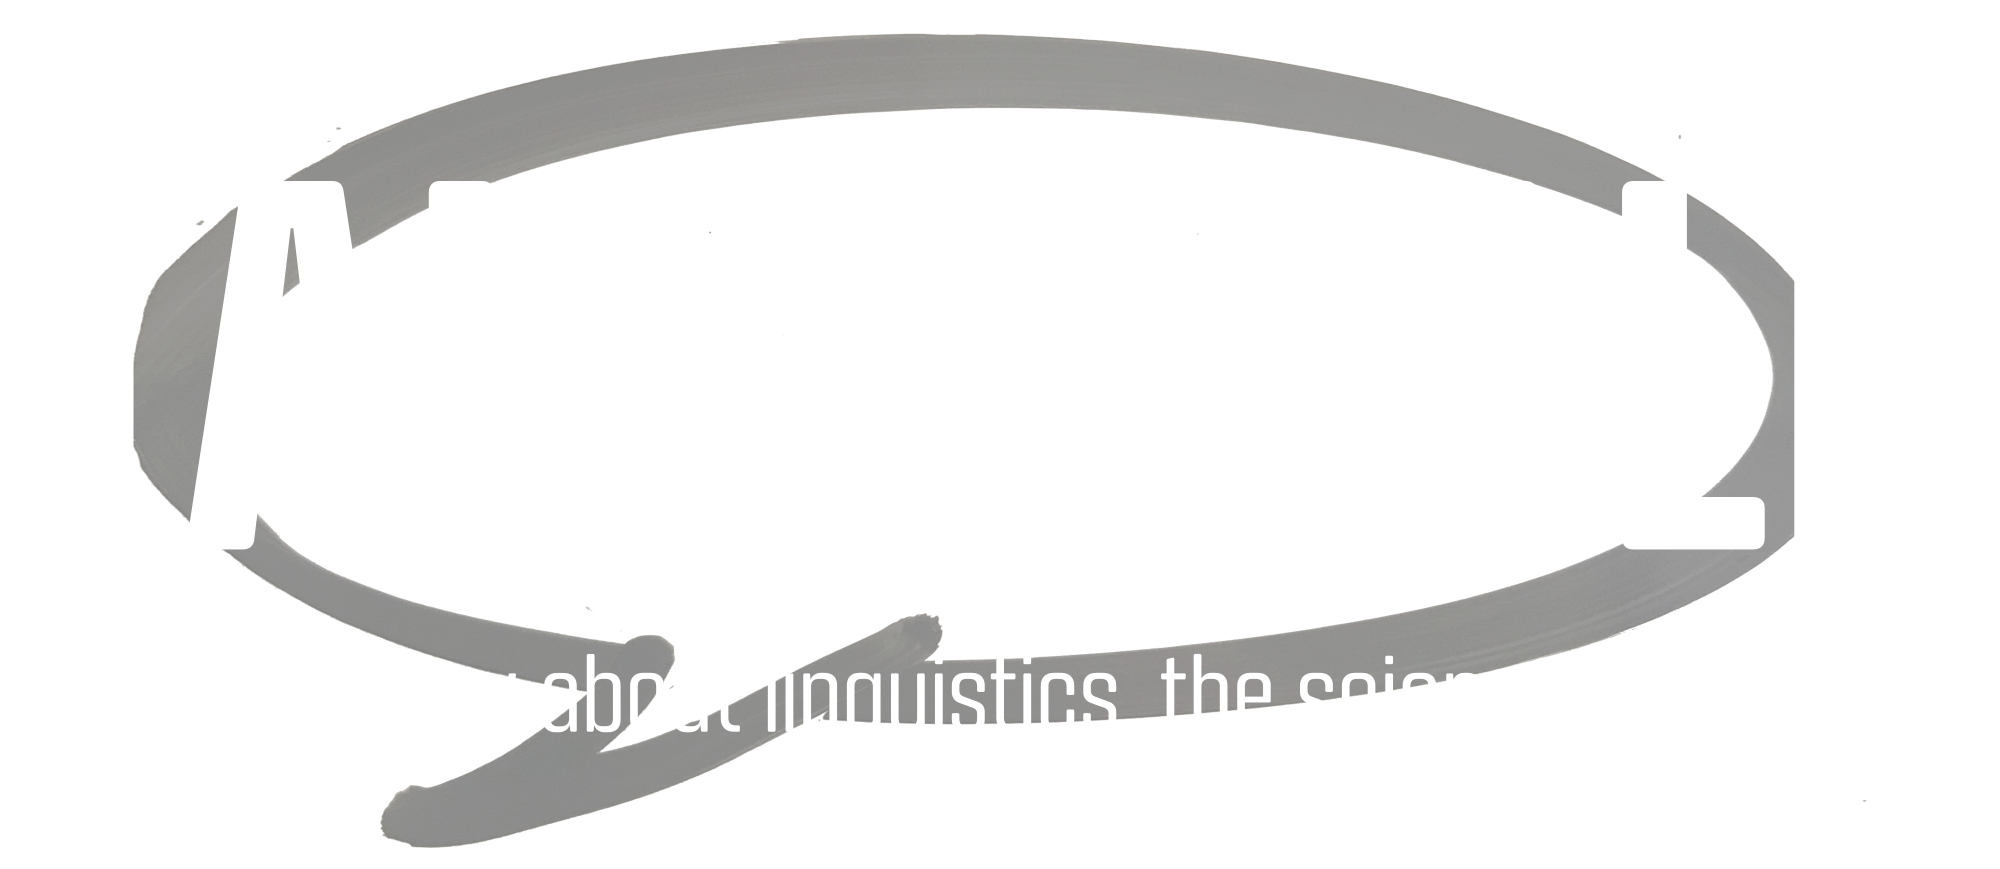 Talk the Talk